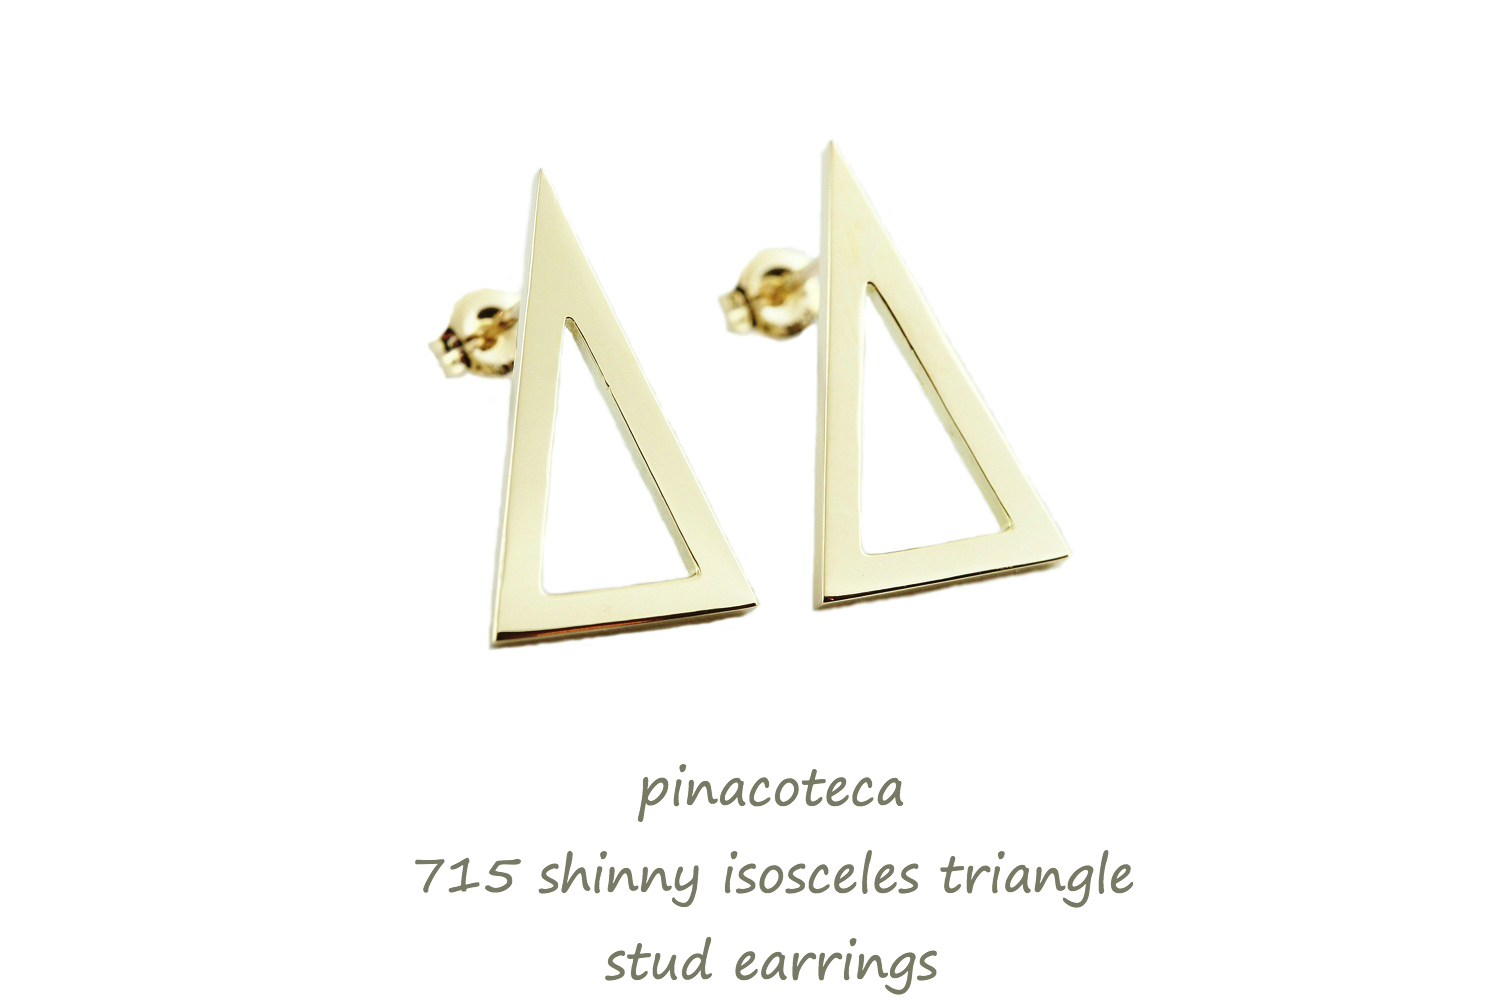 ピナコテーカ 715 シャイン 二等辺三角形 トライアングル 華奢ピアス 18金,pinacoteca Shine Isosceles Triangle Stud Earrings K18